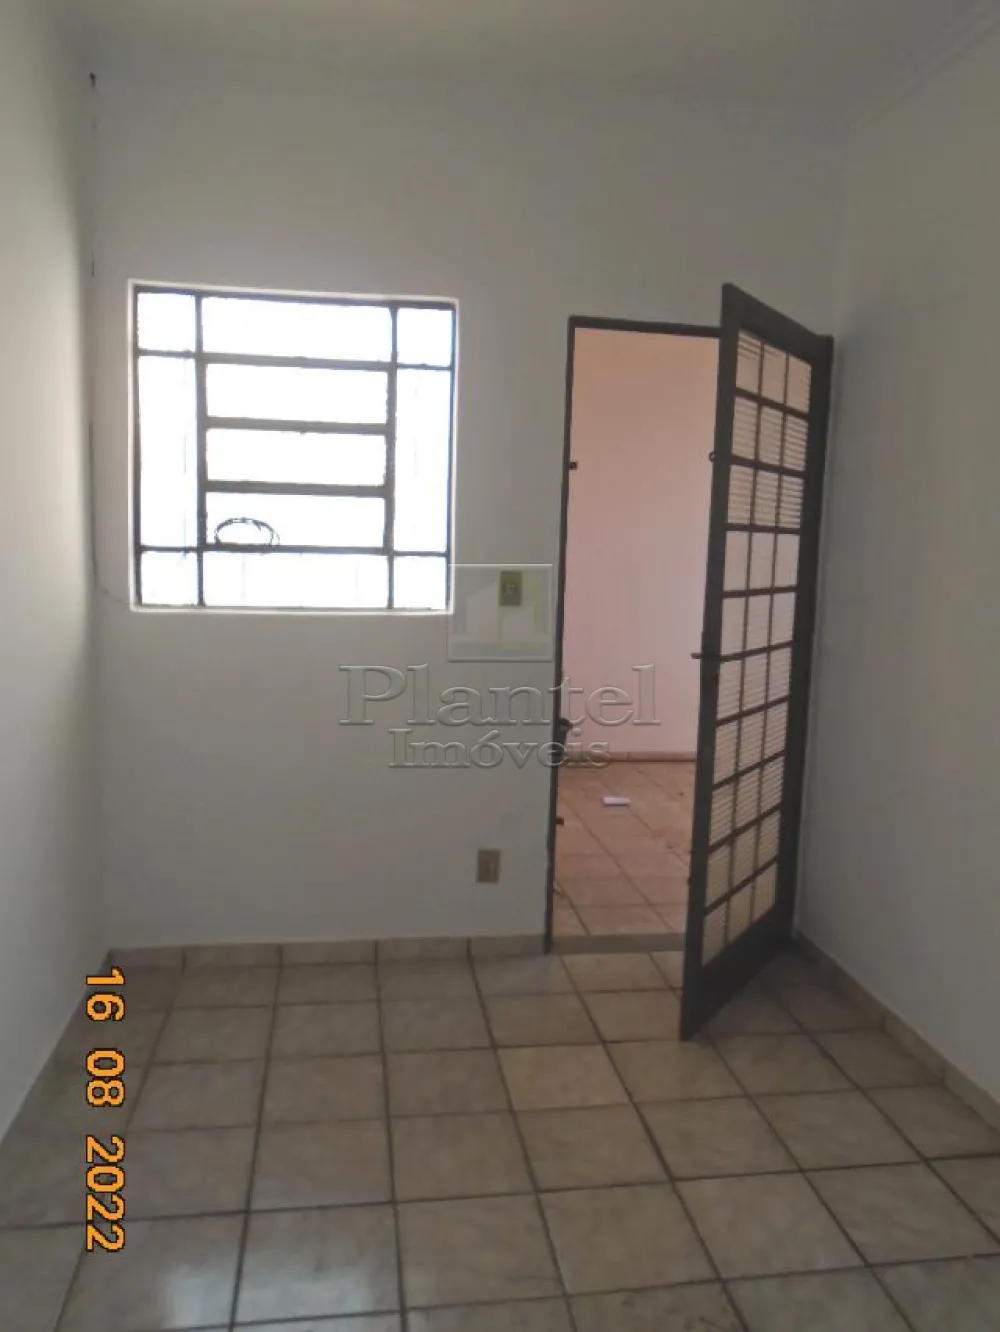 Imobiliária Ribeirão Preto - Plantel Imóveis - Casa - Vila Albertina - Ribeirão Preto